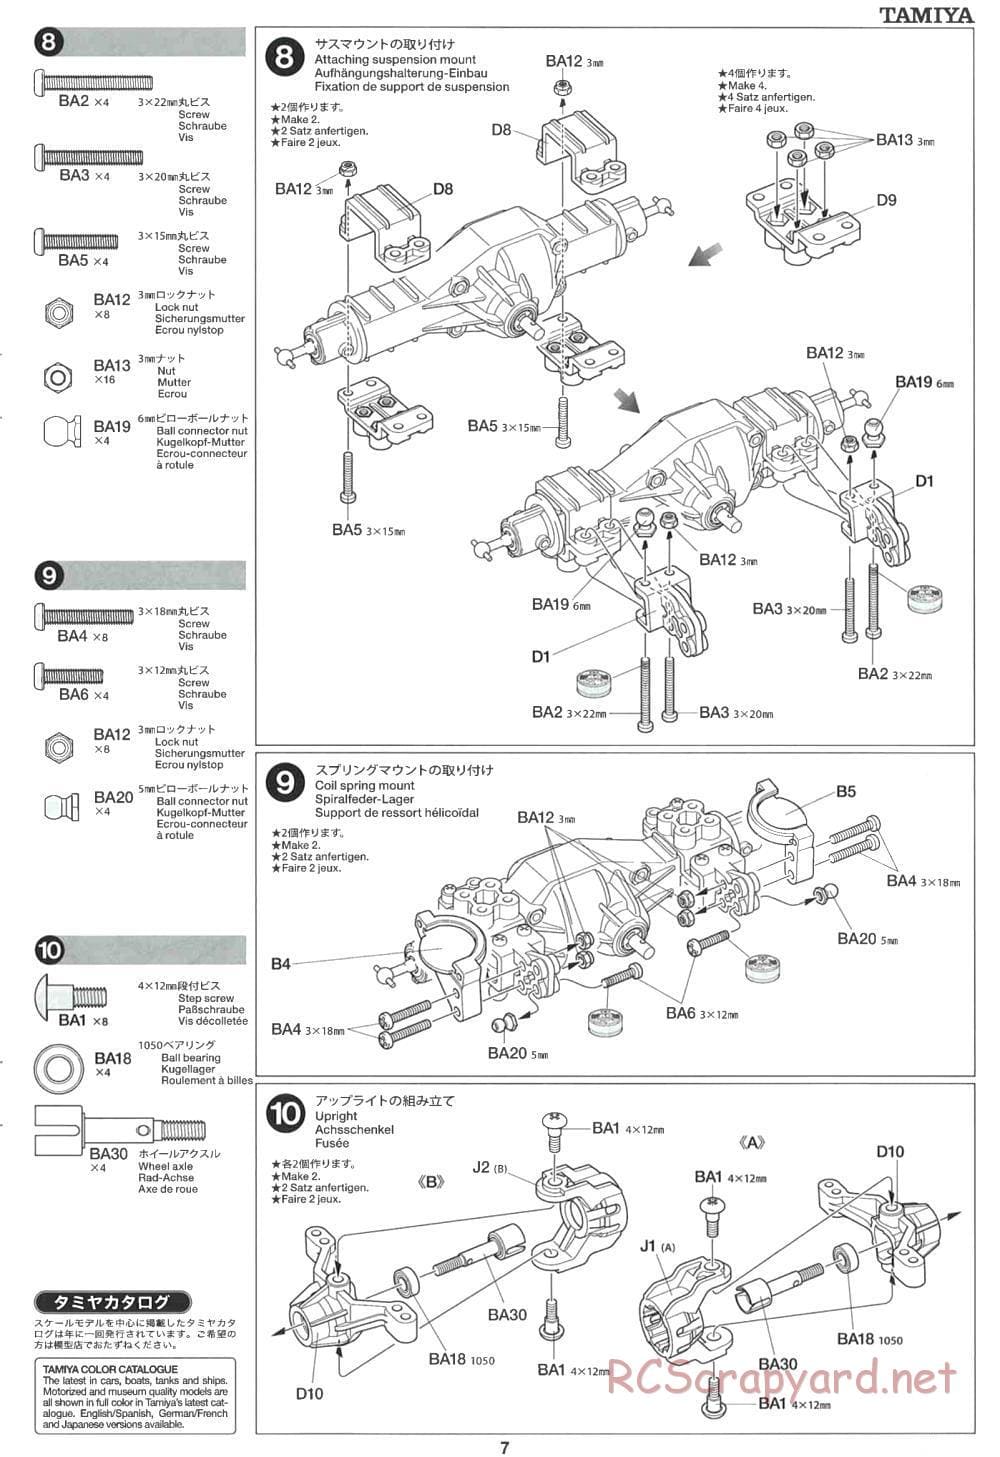 Tamiya - CR-01 Chassis - Manual - Page 7